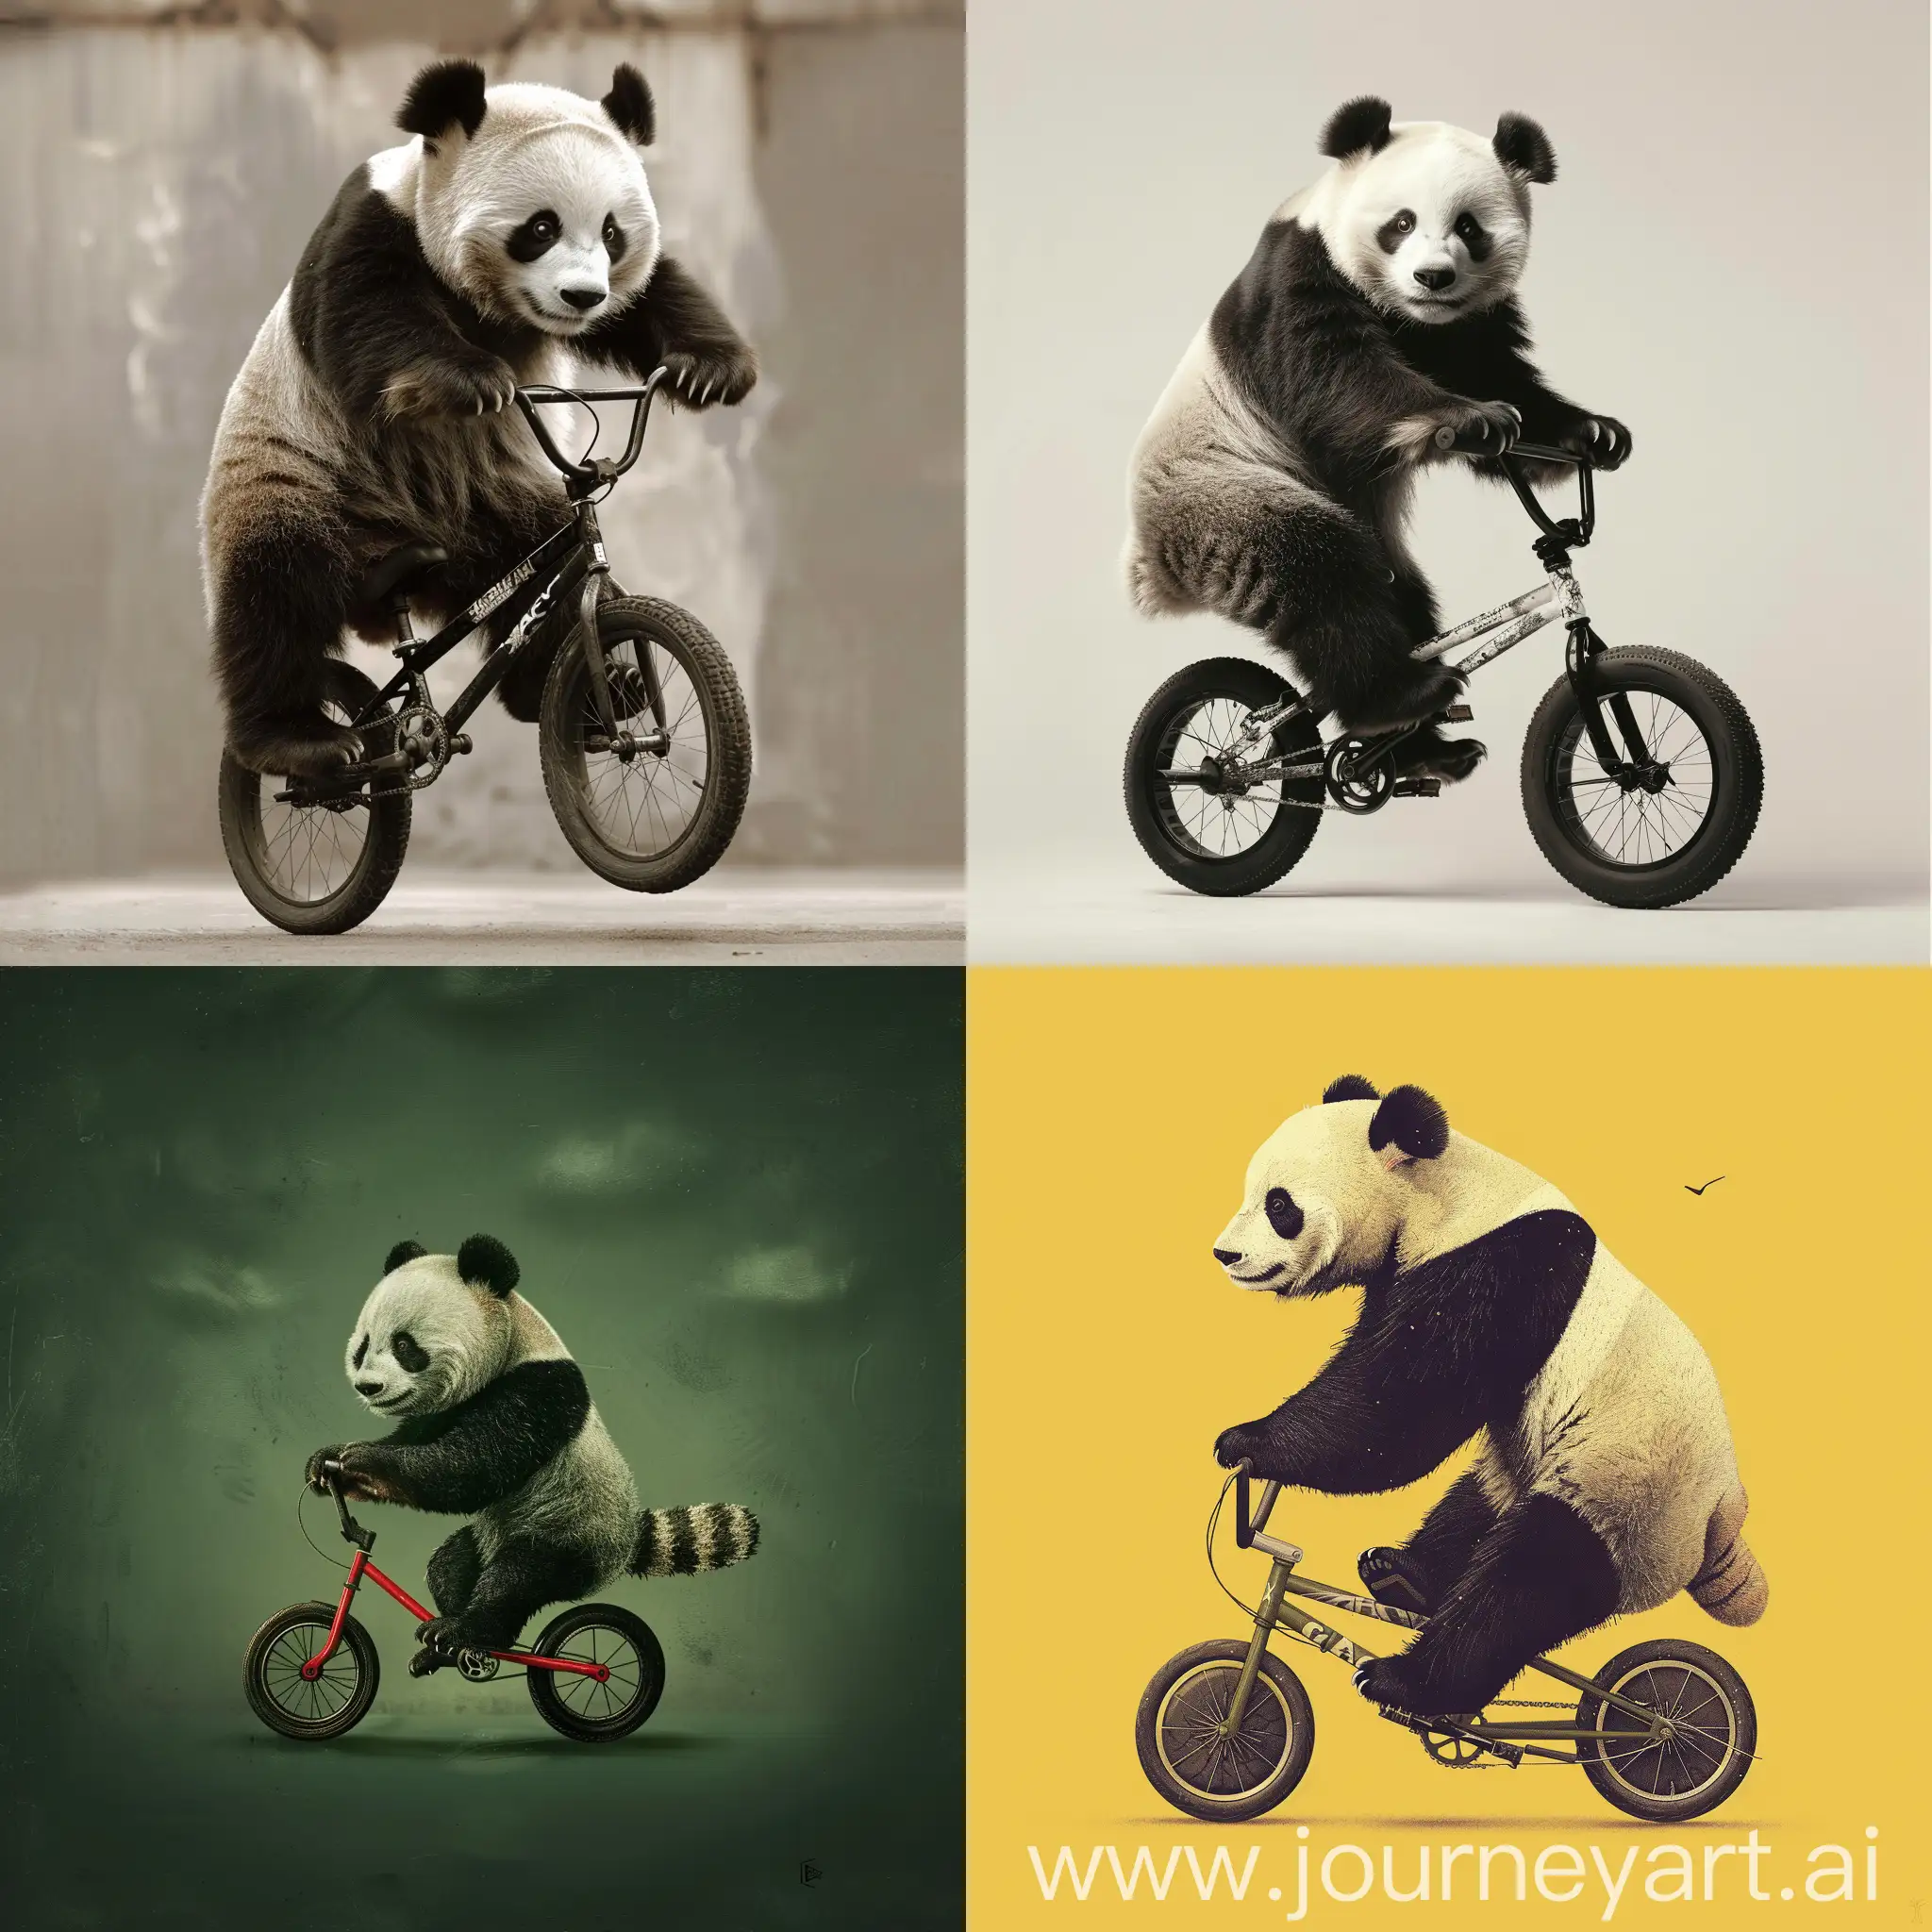 Panda-Riding-Bicycle-Playful-Panda-Pedaling-Through-the-Park